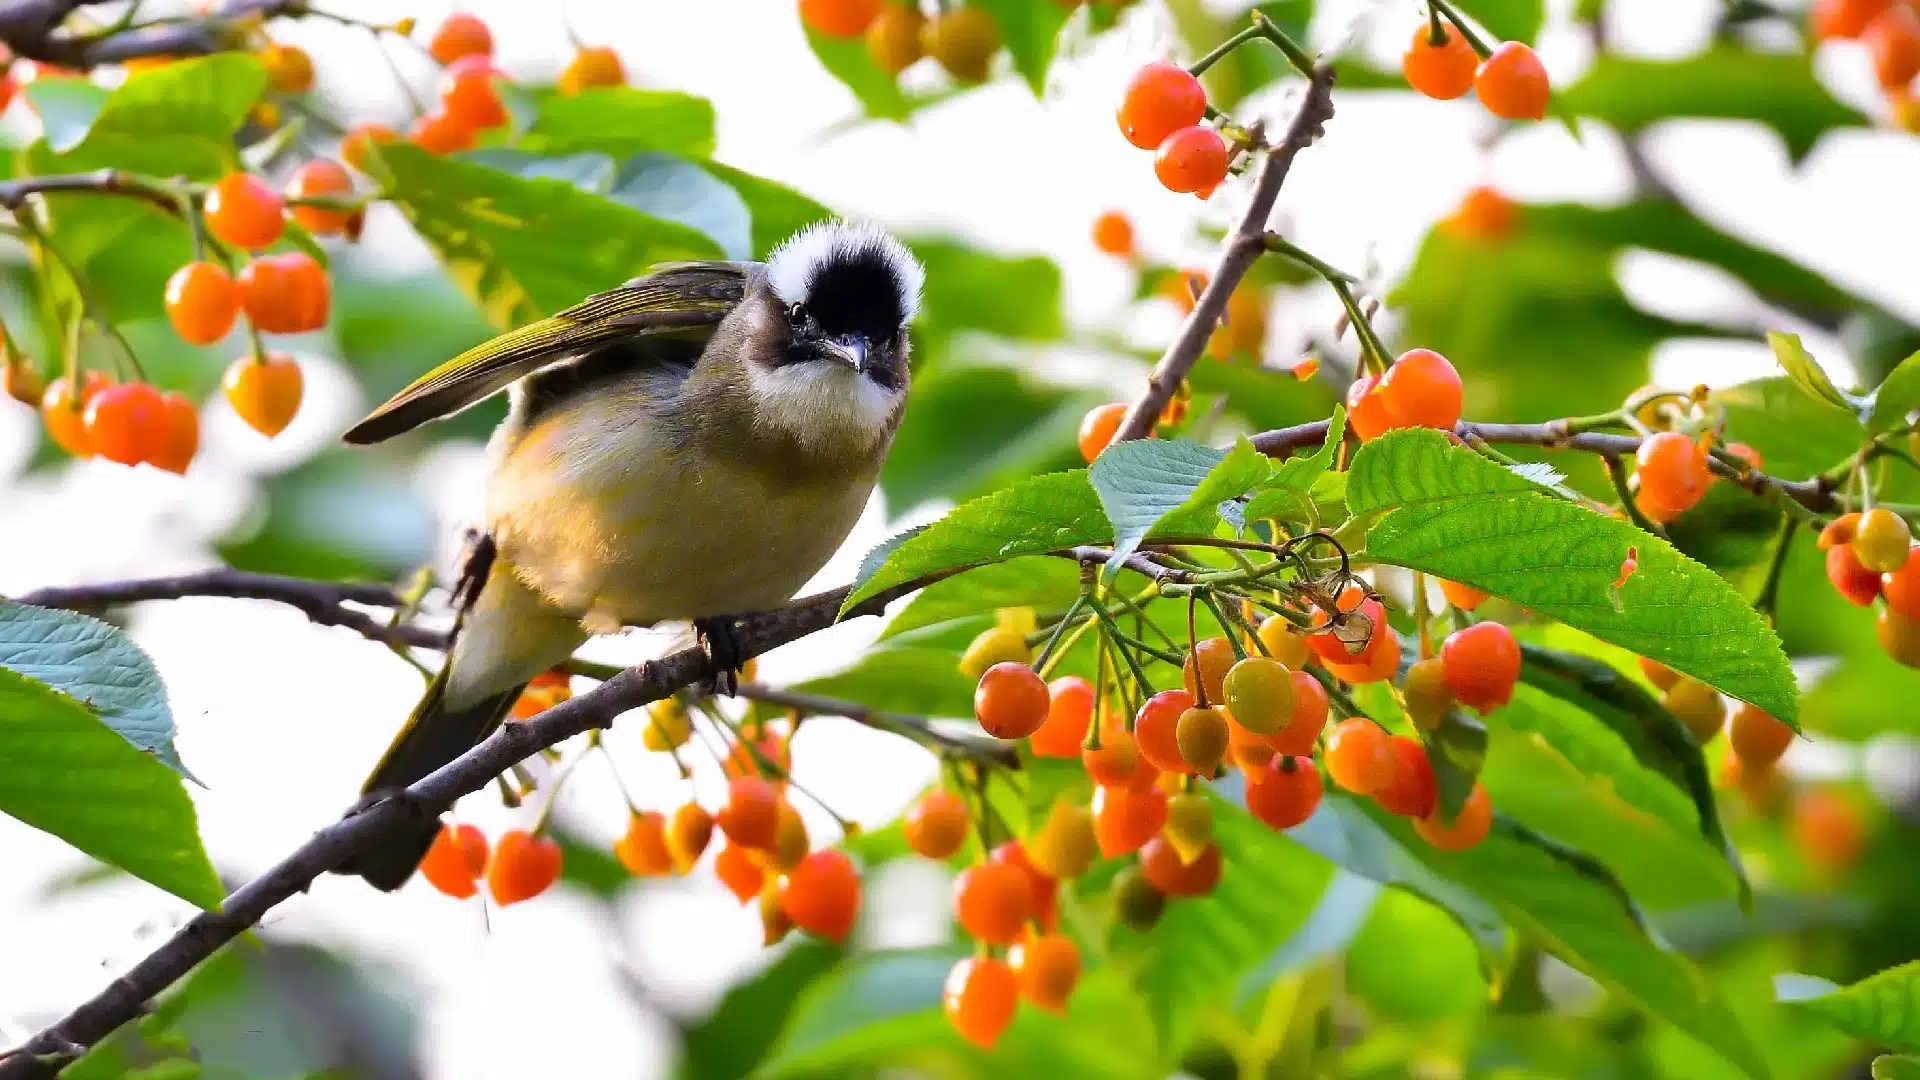 Birds eating cherries